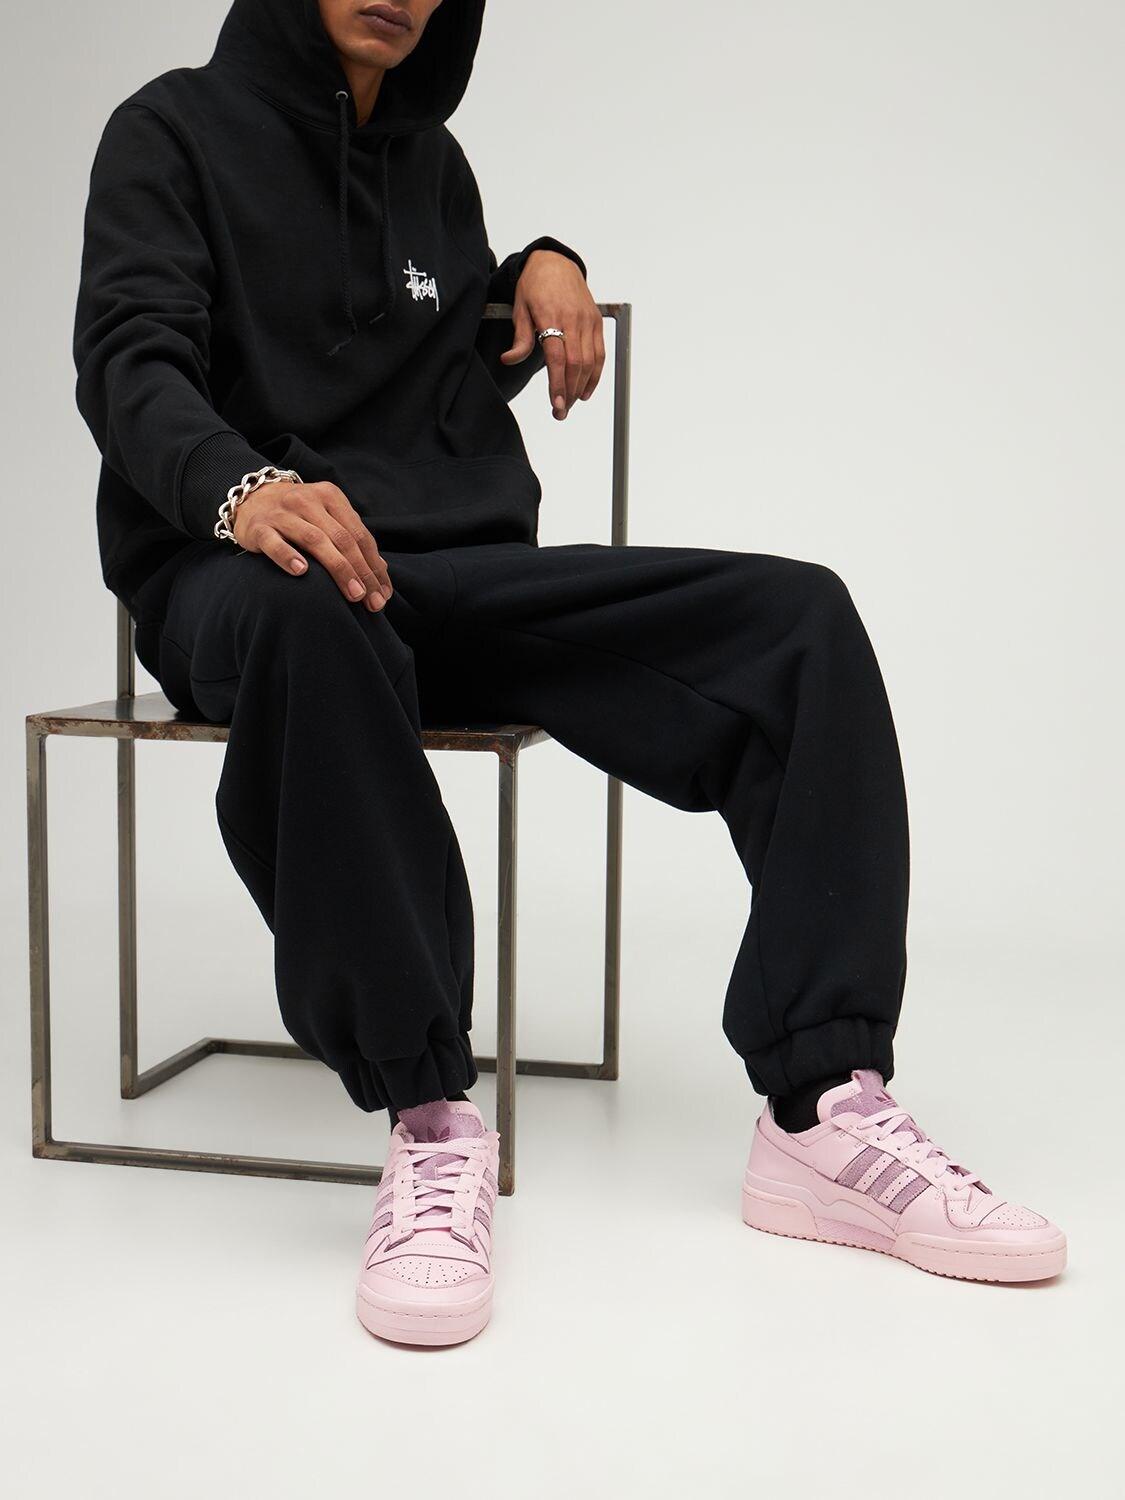 adidas Originals Forum 84 Low Sneakers in Pink for Men | Lyst